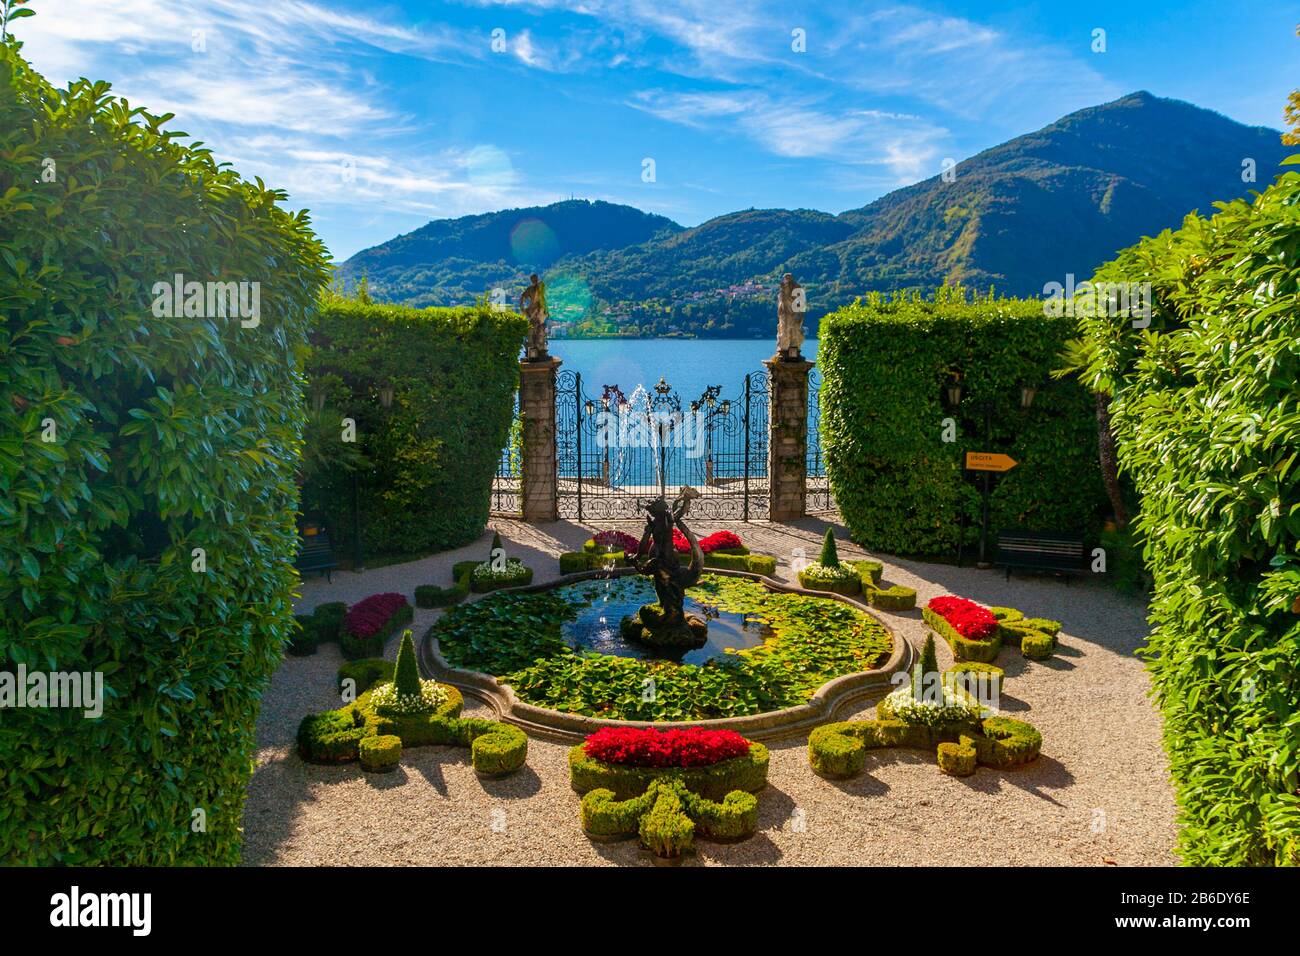 La fontaine de la magnifique Villa Carlotta sur le lac de Côme, Italie Banque D'Images